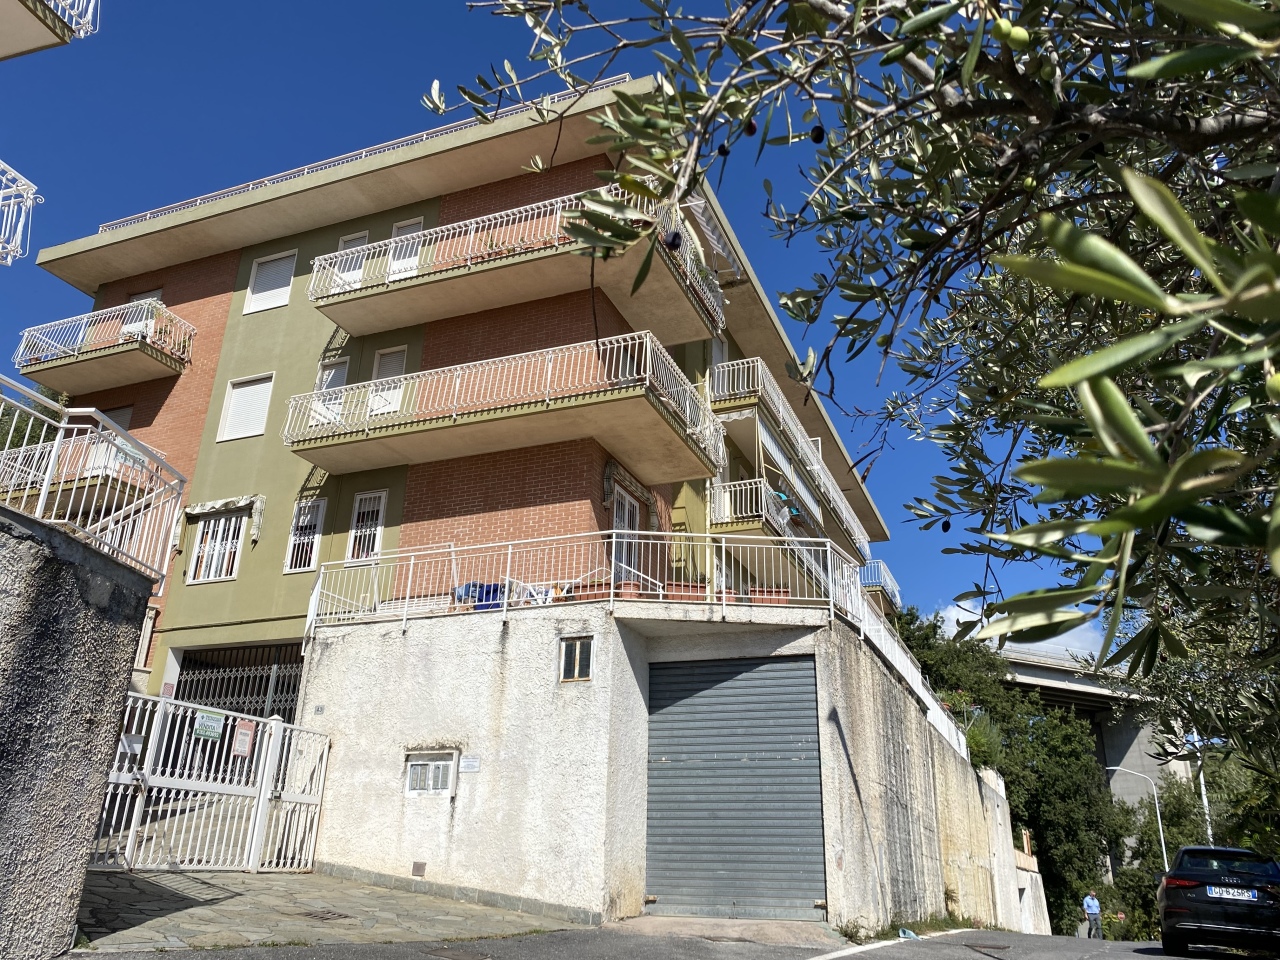 Appartamento in vendita a San Bartolomeo al Mare, 2 locali, prezzo € 100.000 | PortaleAgenzieImmobiliari.it